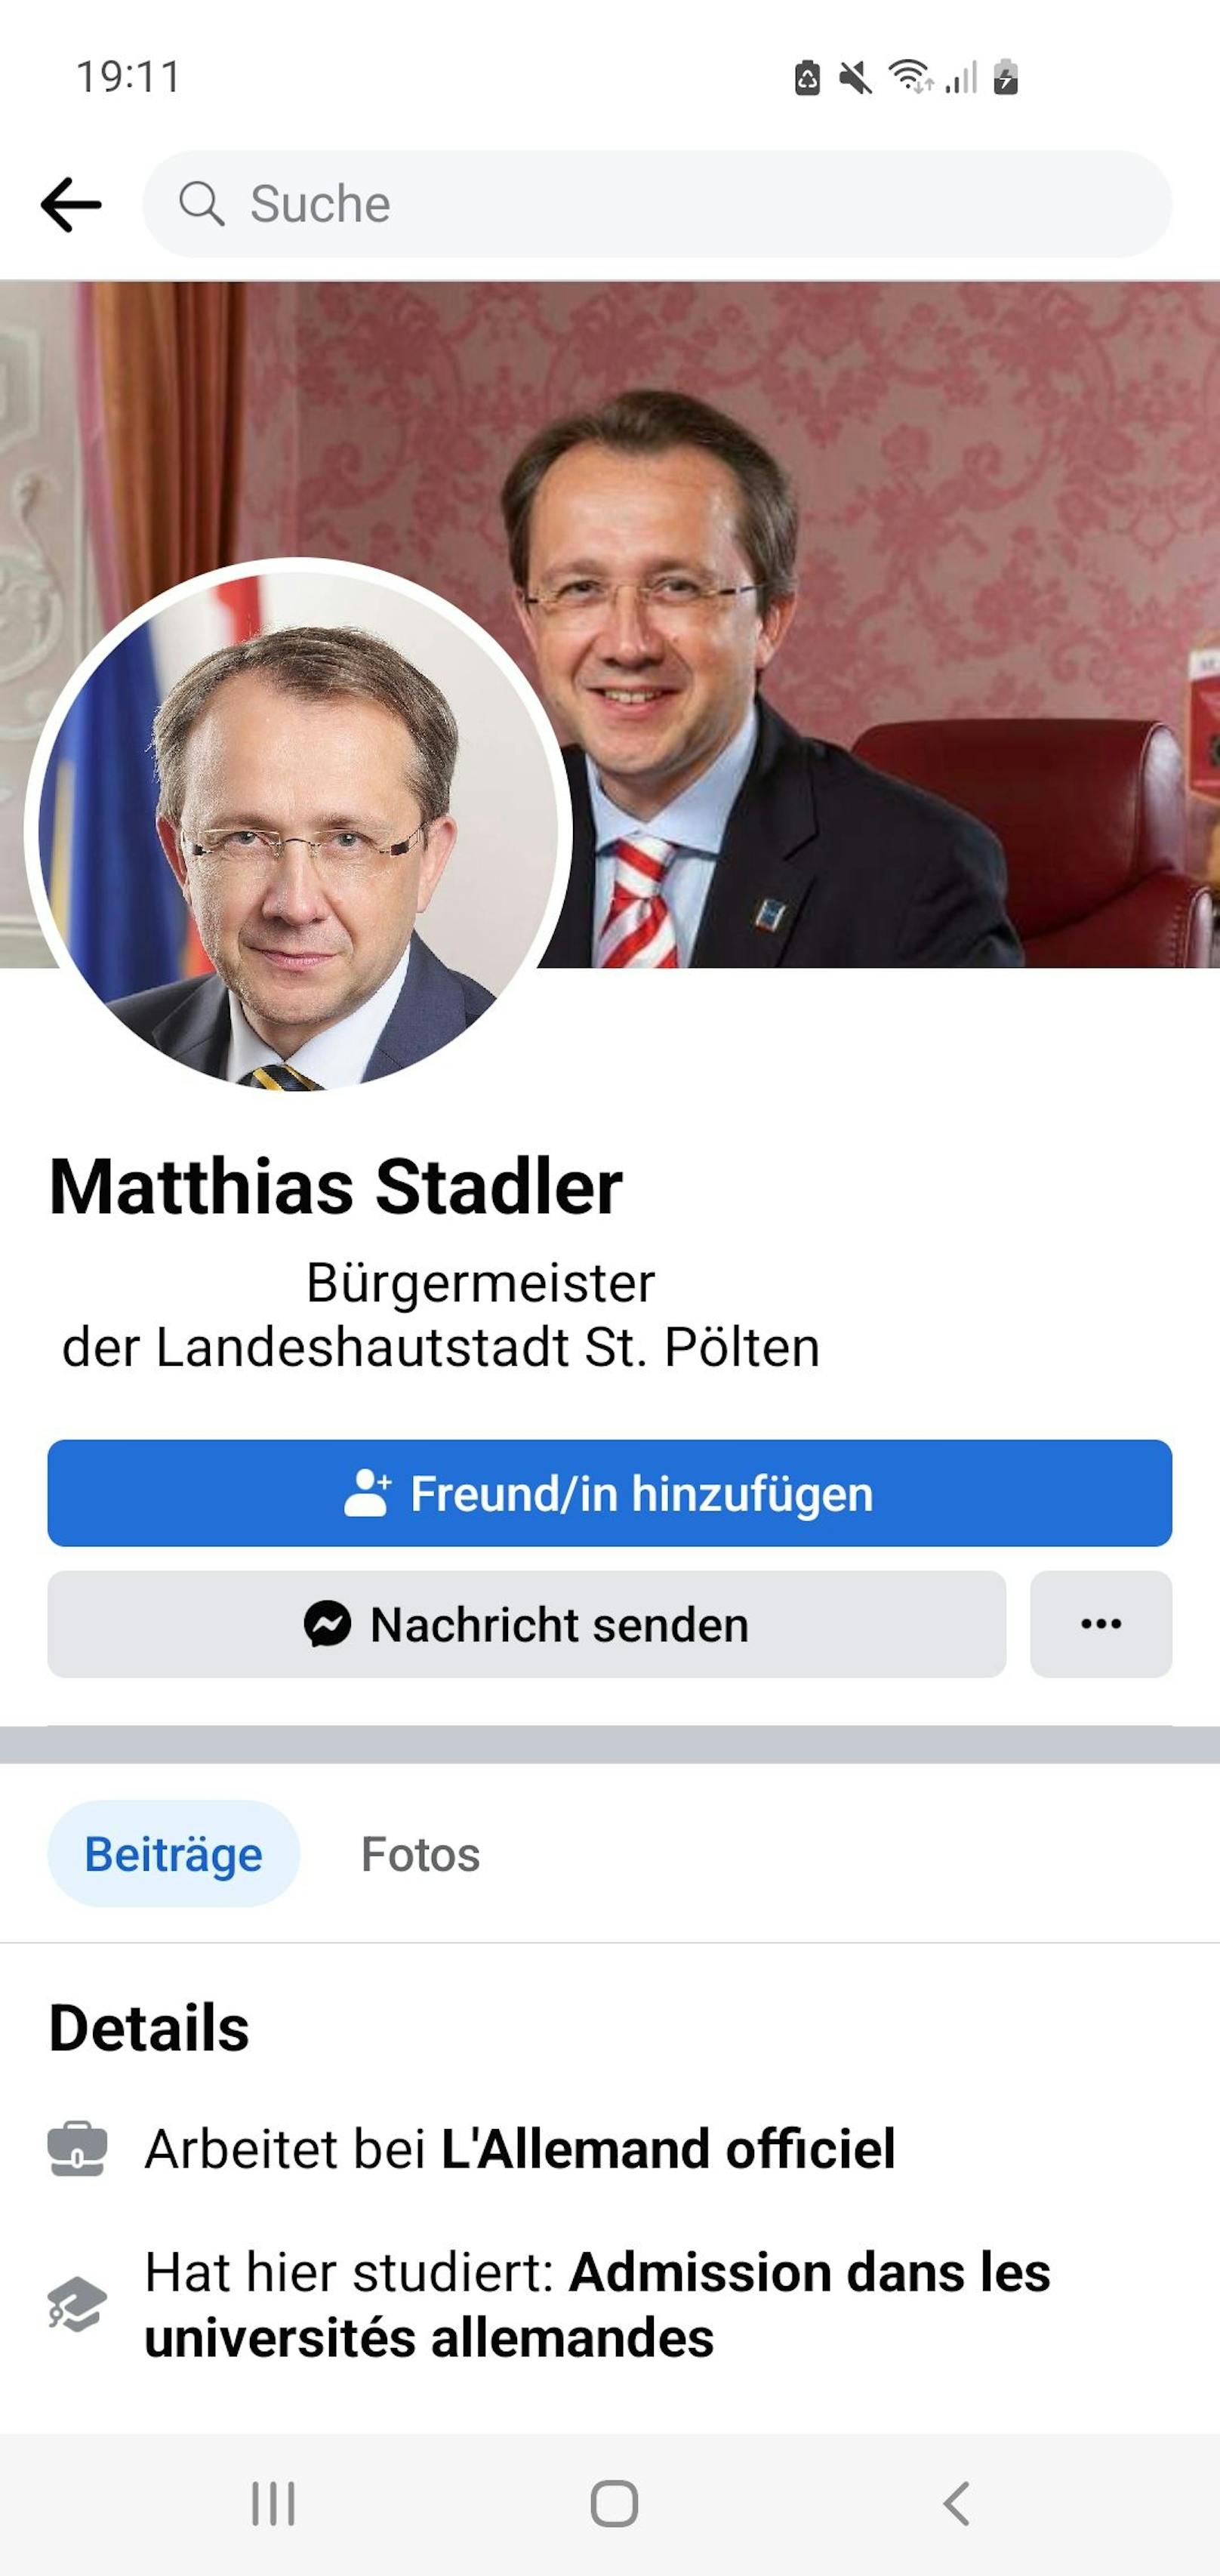 St. Pöltens Stadtchef warnt jetzt vor Fake-Profil